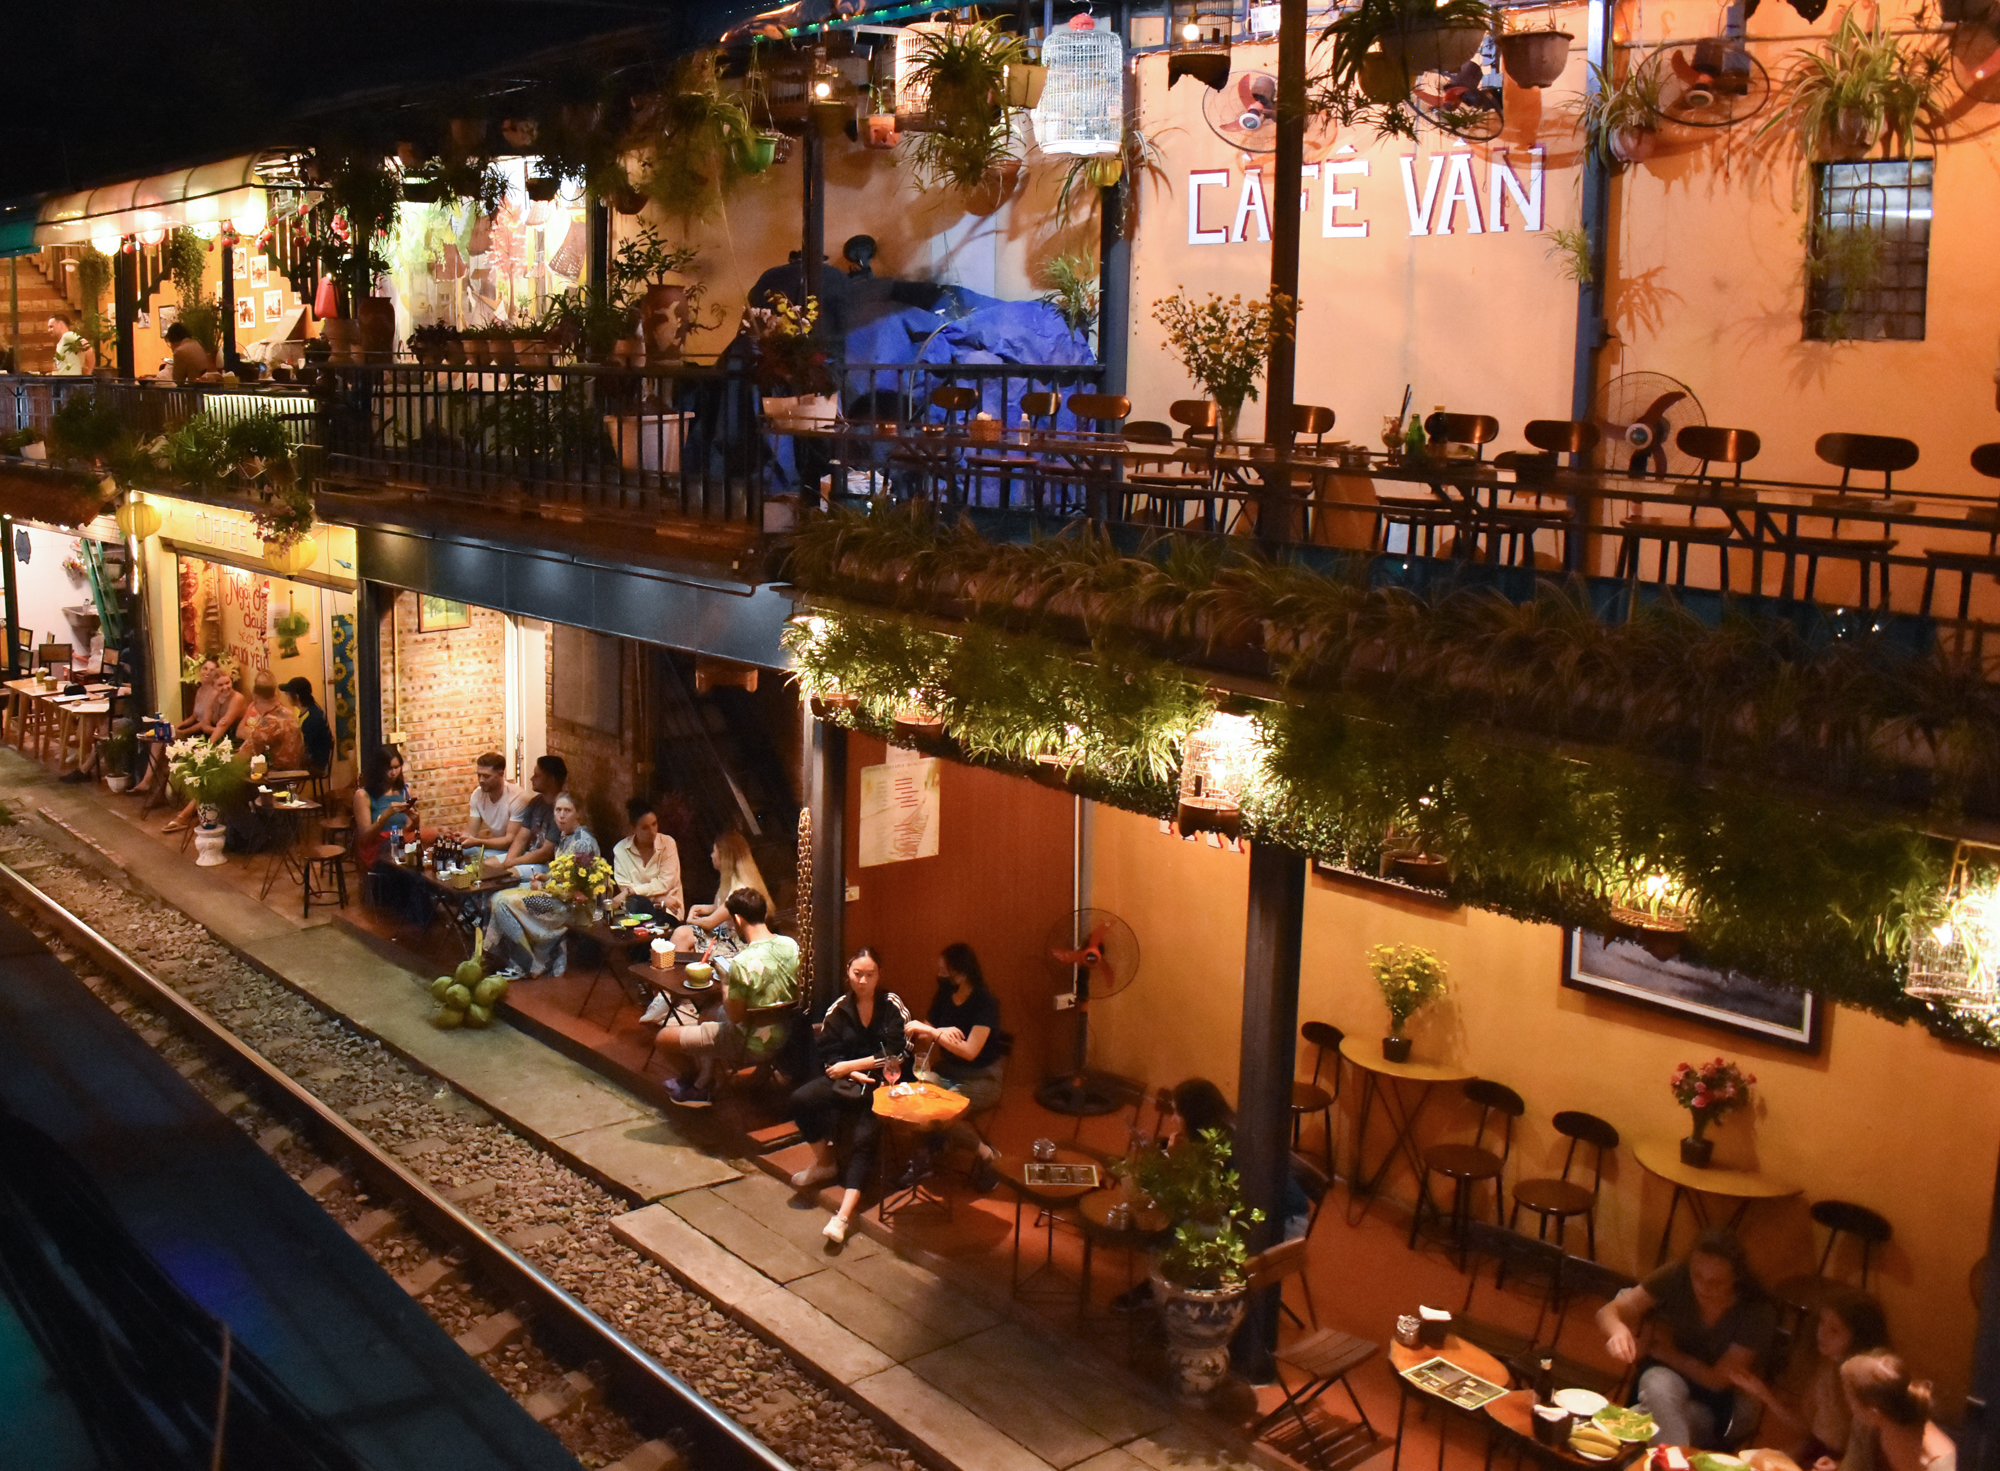 Phố cà phê đường tàu ở Hà Nội đón khách trở lại với nhiều thay đổi lớn - Ảnh 8.